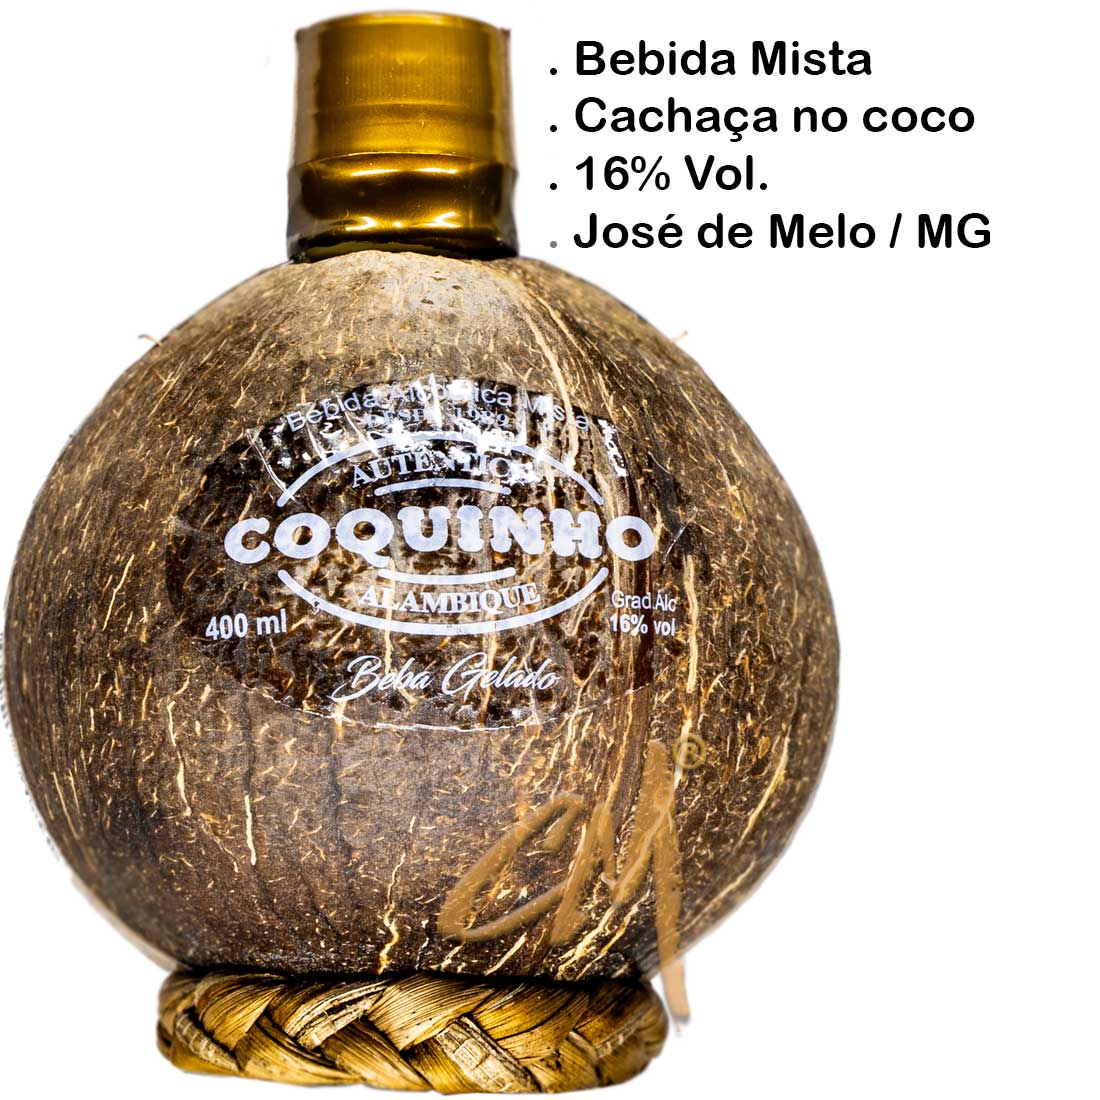 Bebida Mista Coquinho Germana Alambique 400 ml   (Nova União - MG)